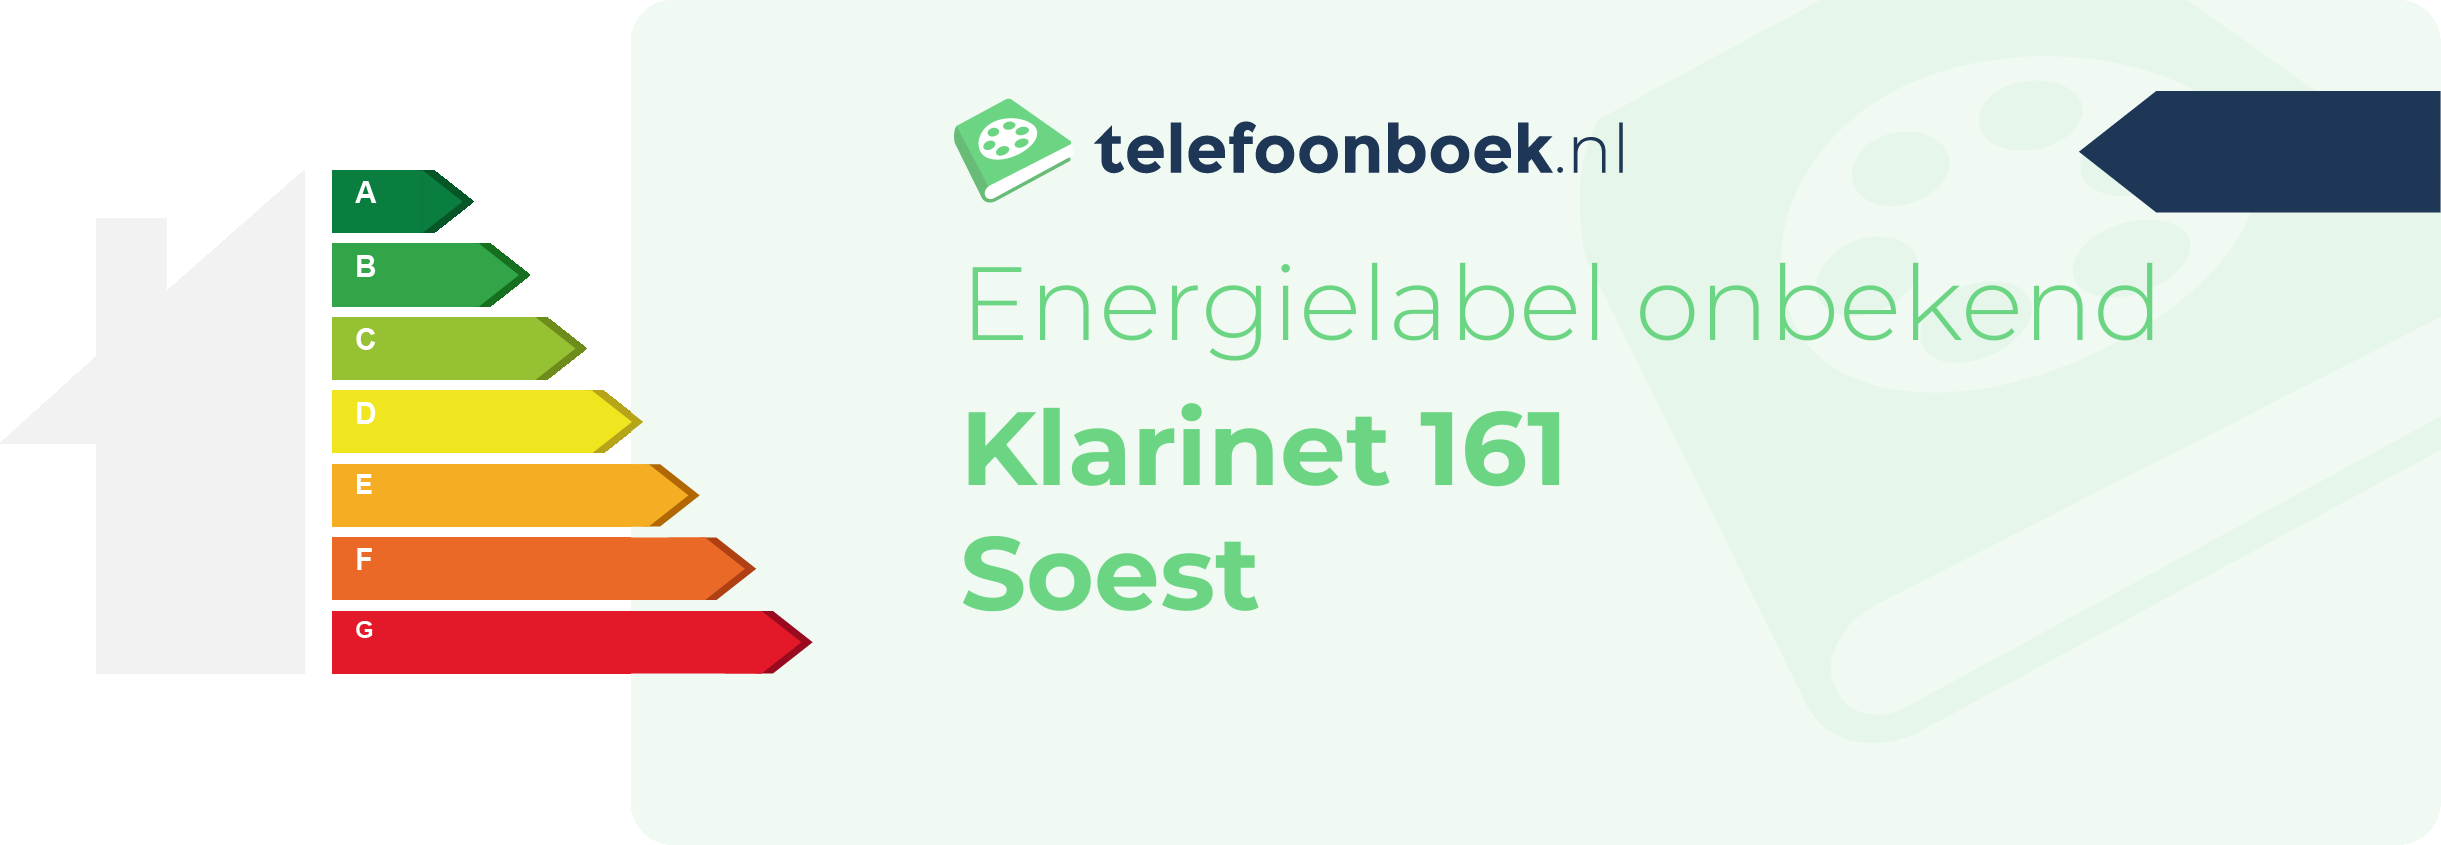 Energielabel Klarinet 161 Soest